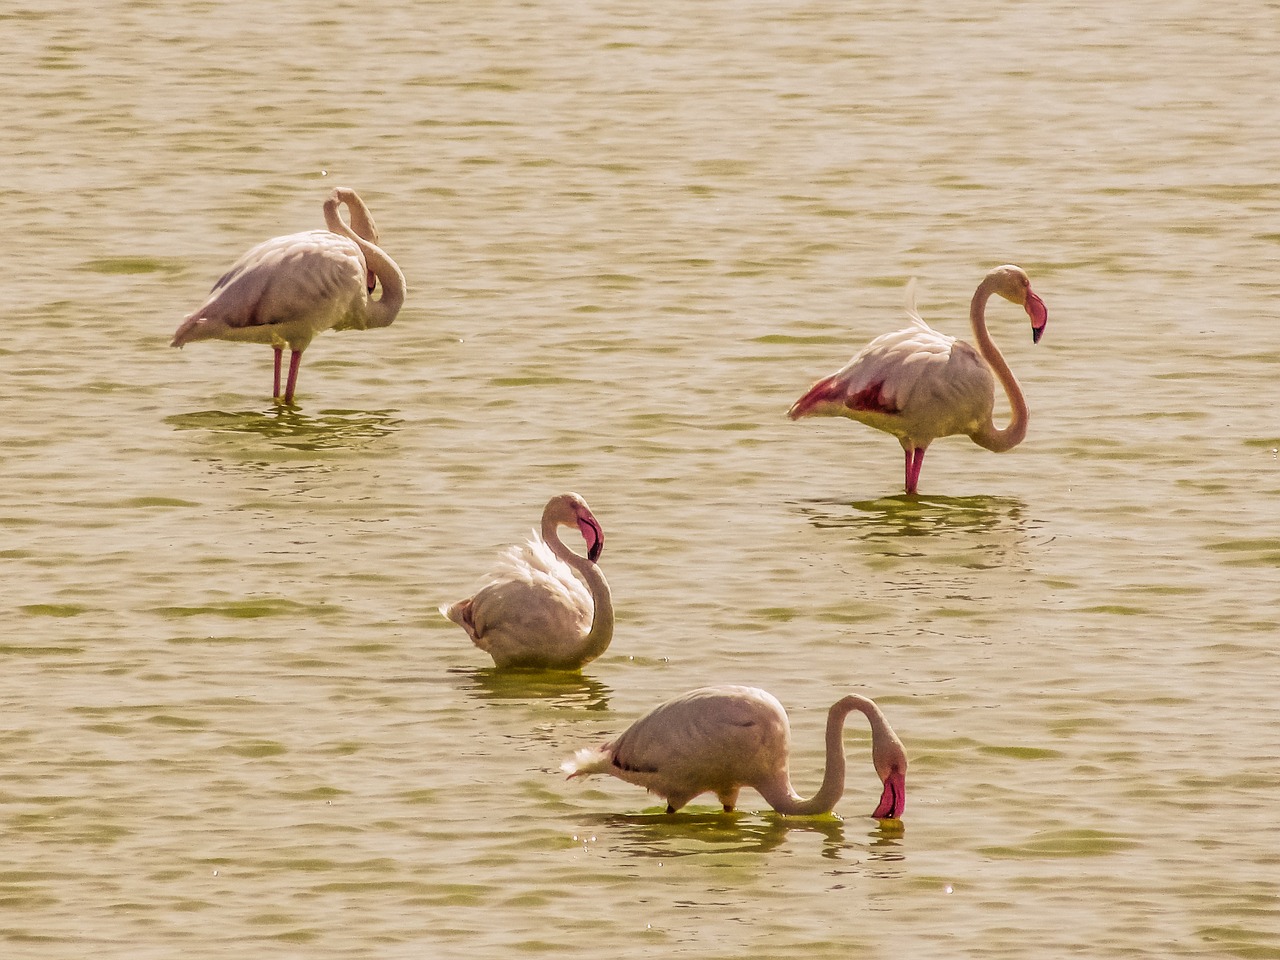 cyprus oroklini lake flamingos free photo